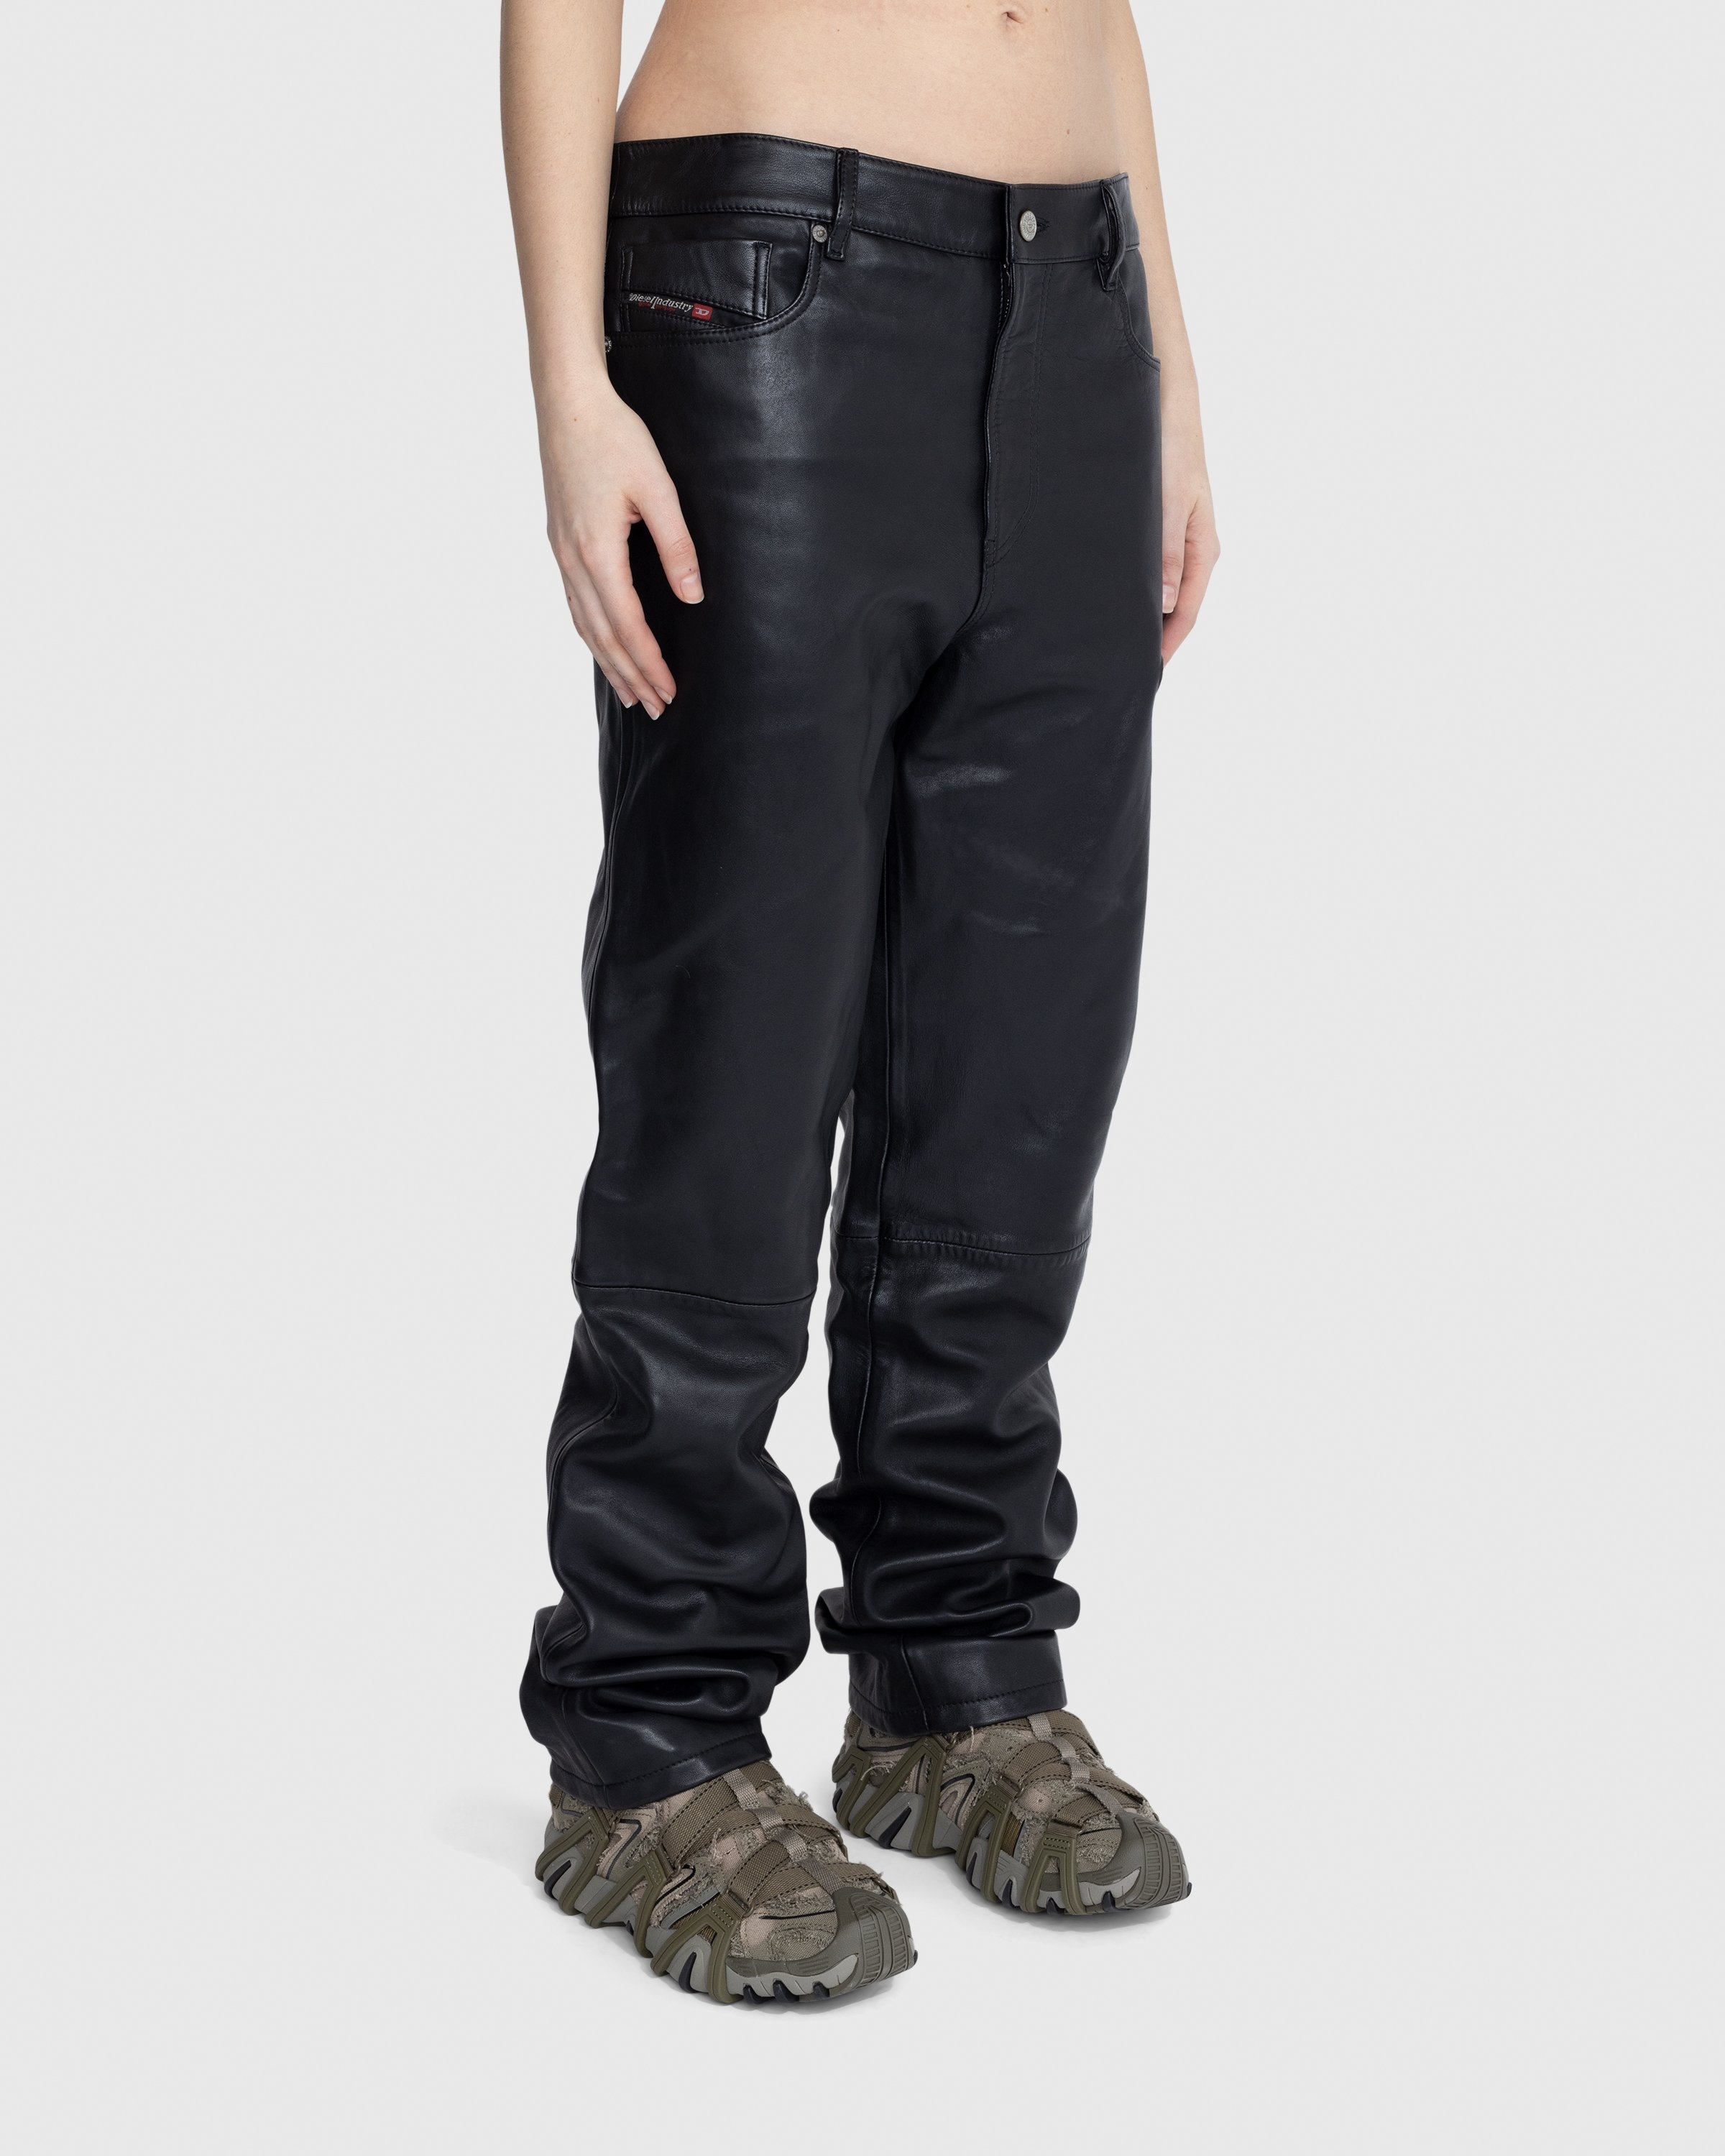 Diesel – P-Metal Trousers Black